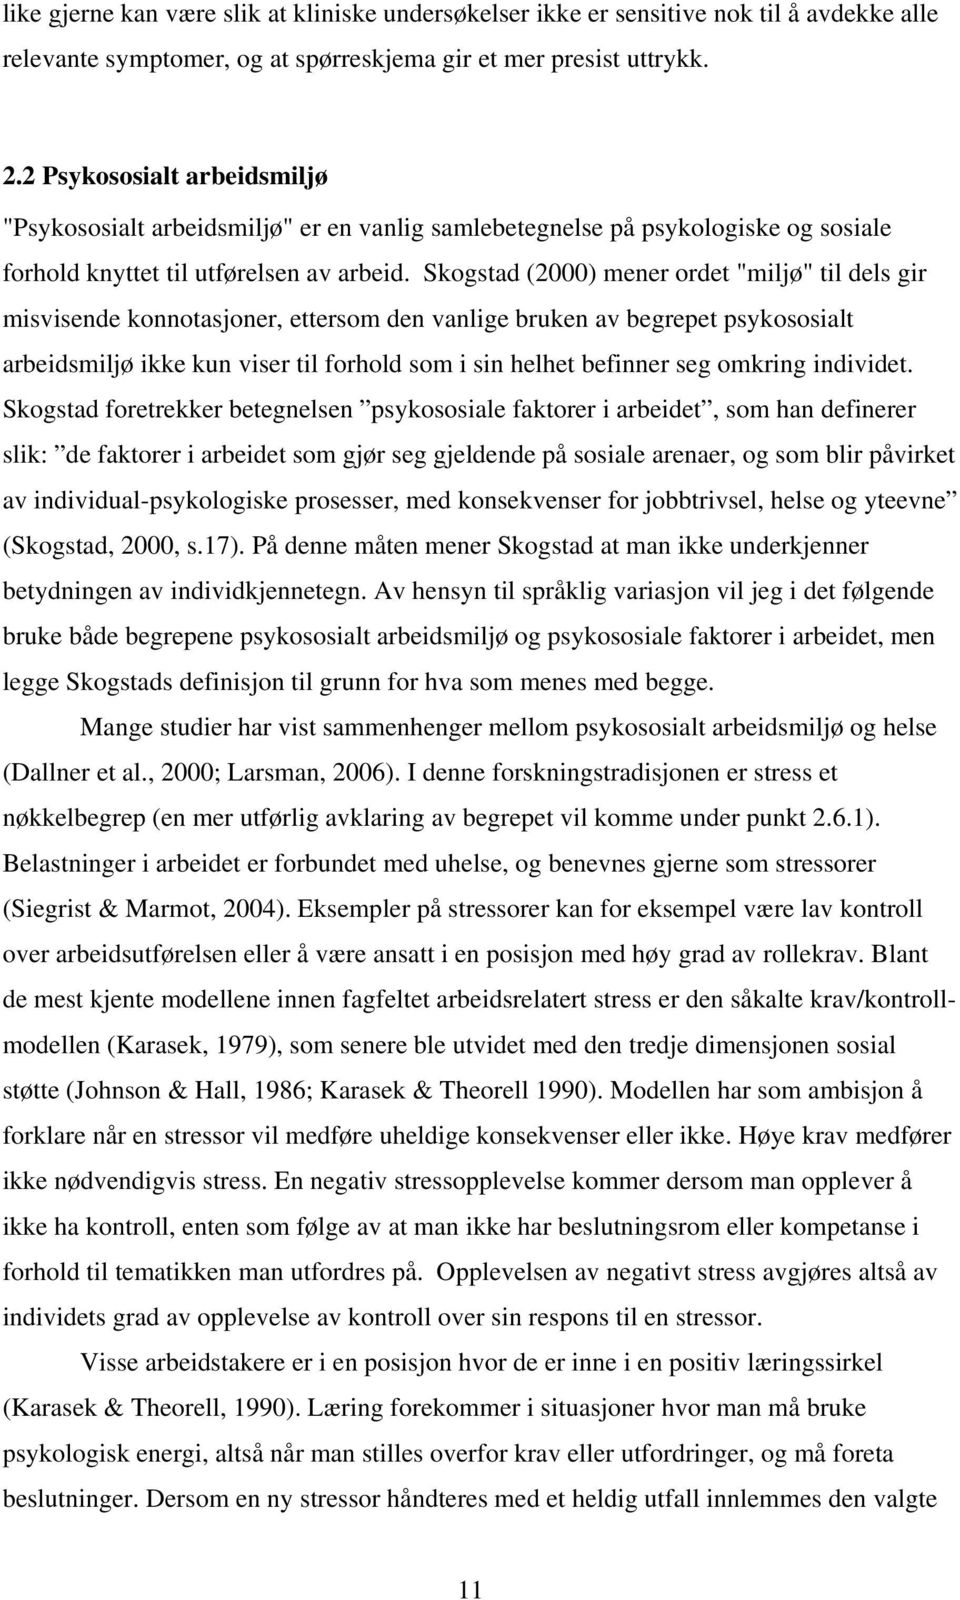 Skogstad (2000) mener ordet "miljø" til dels gir misvisende konnotasjoner, ettersom den vanlige bruken av begrepet psykososialt arbeidsmiljø ikke kun viser til forhold som i sin helhet befinner seg